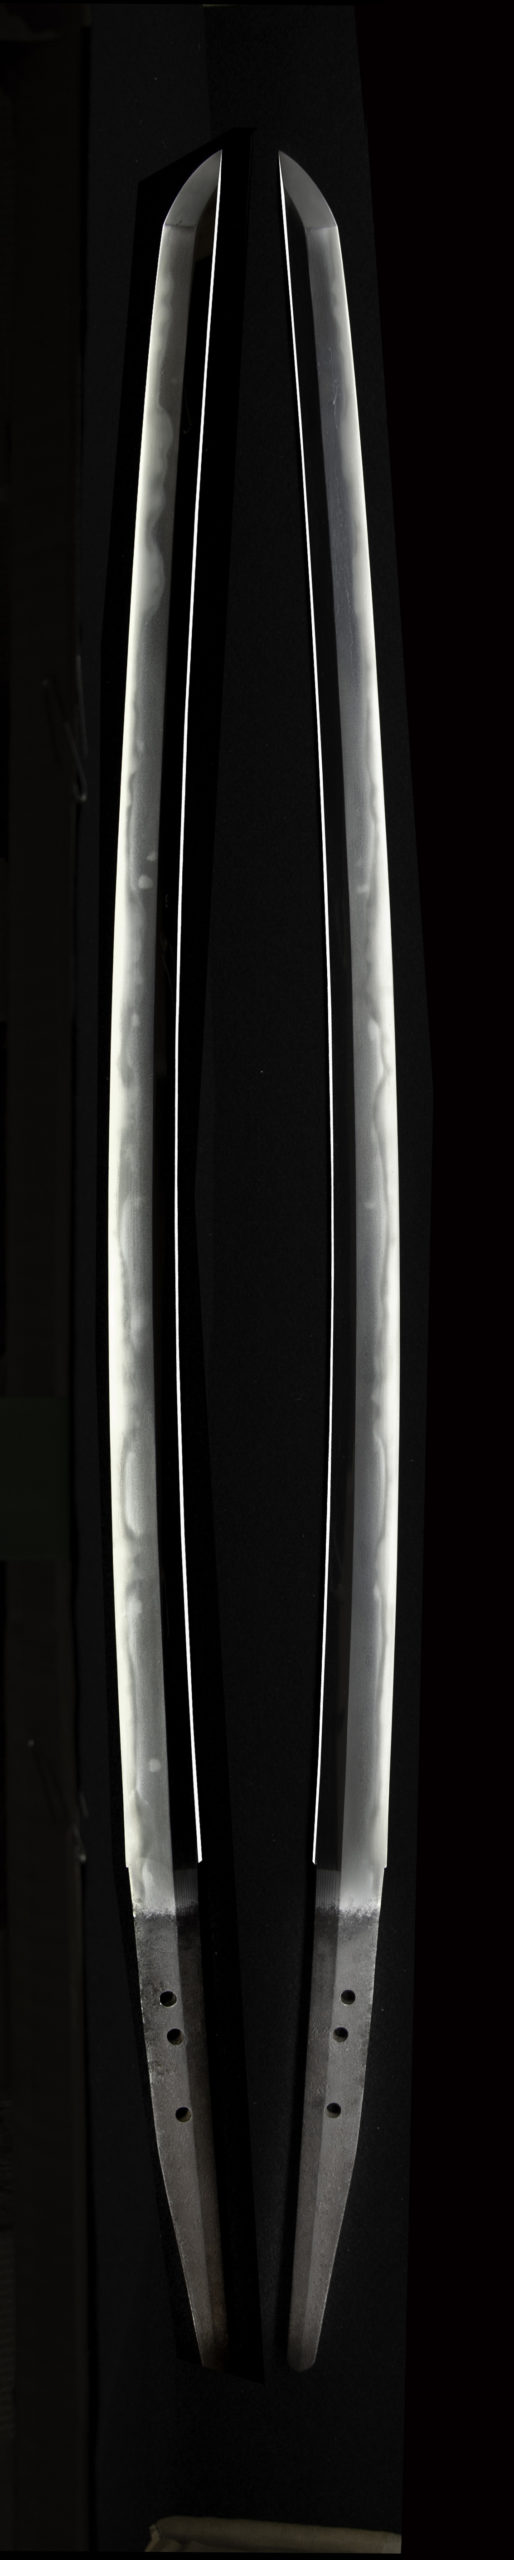 千子村正の特徴である表と裏の刃文が揃い茎がタナゴ腹茎である。 This is the characteristic of Muramasa. The front and back swords are the same. The stem is a unique tanago abdominal stem.